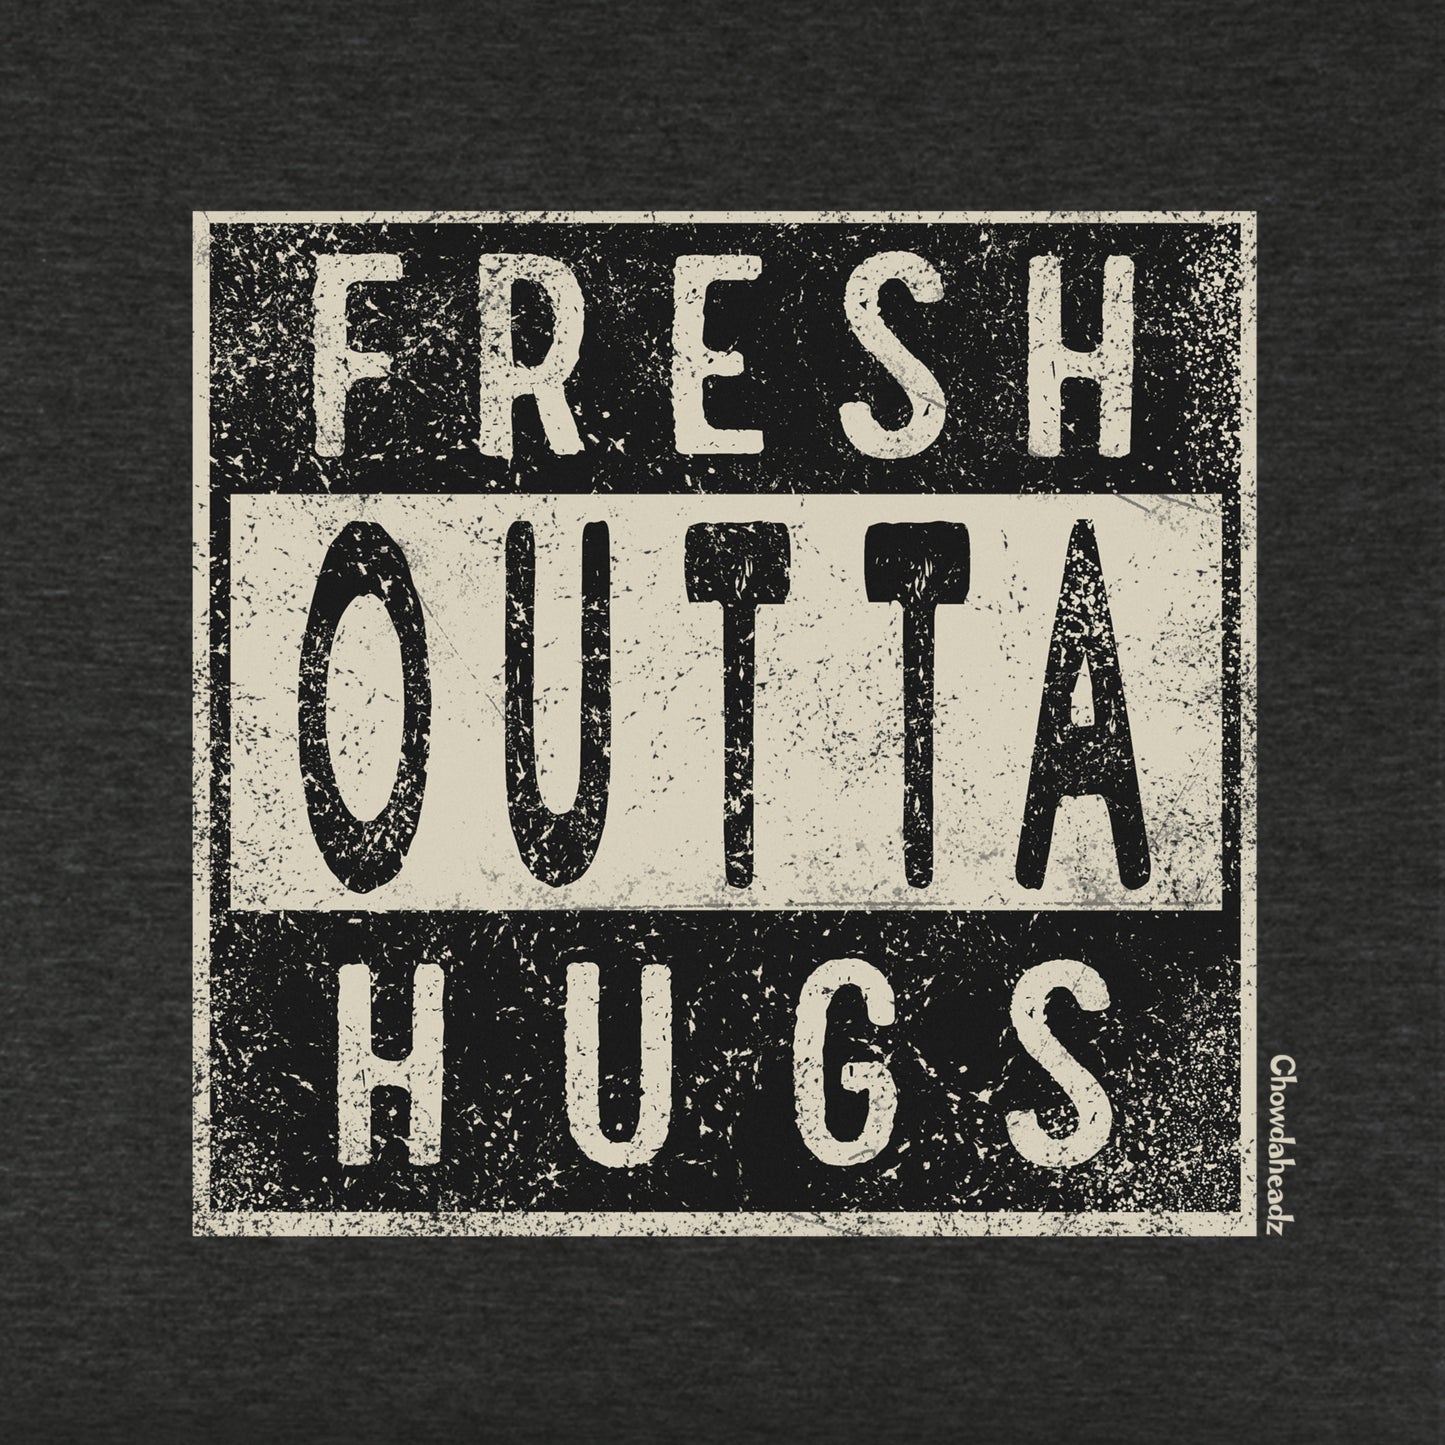 Fresh Outta Hugs Youth T-Shirt - Chowdaheadz